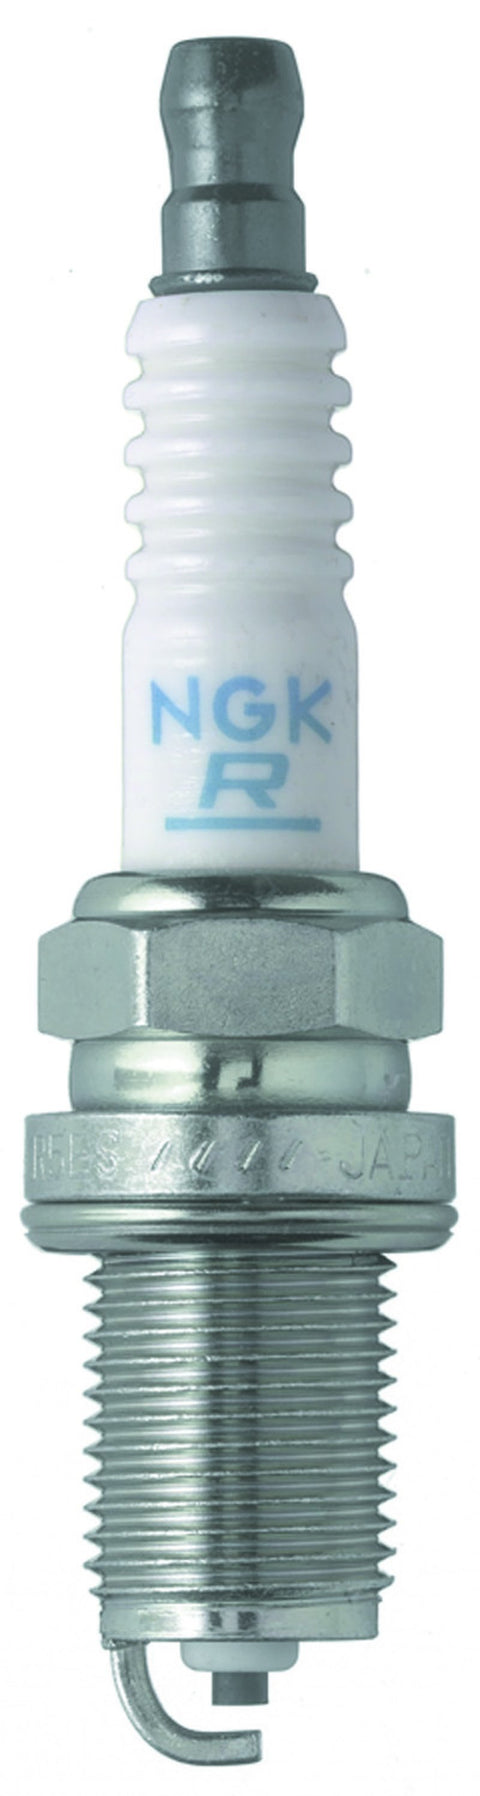 NGK Nickel Heat Range 7 Spark Plug | 1999-2003 Saab 9-5 (4952-1)